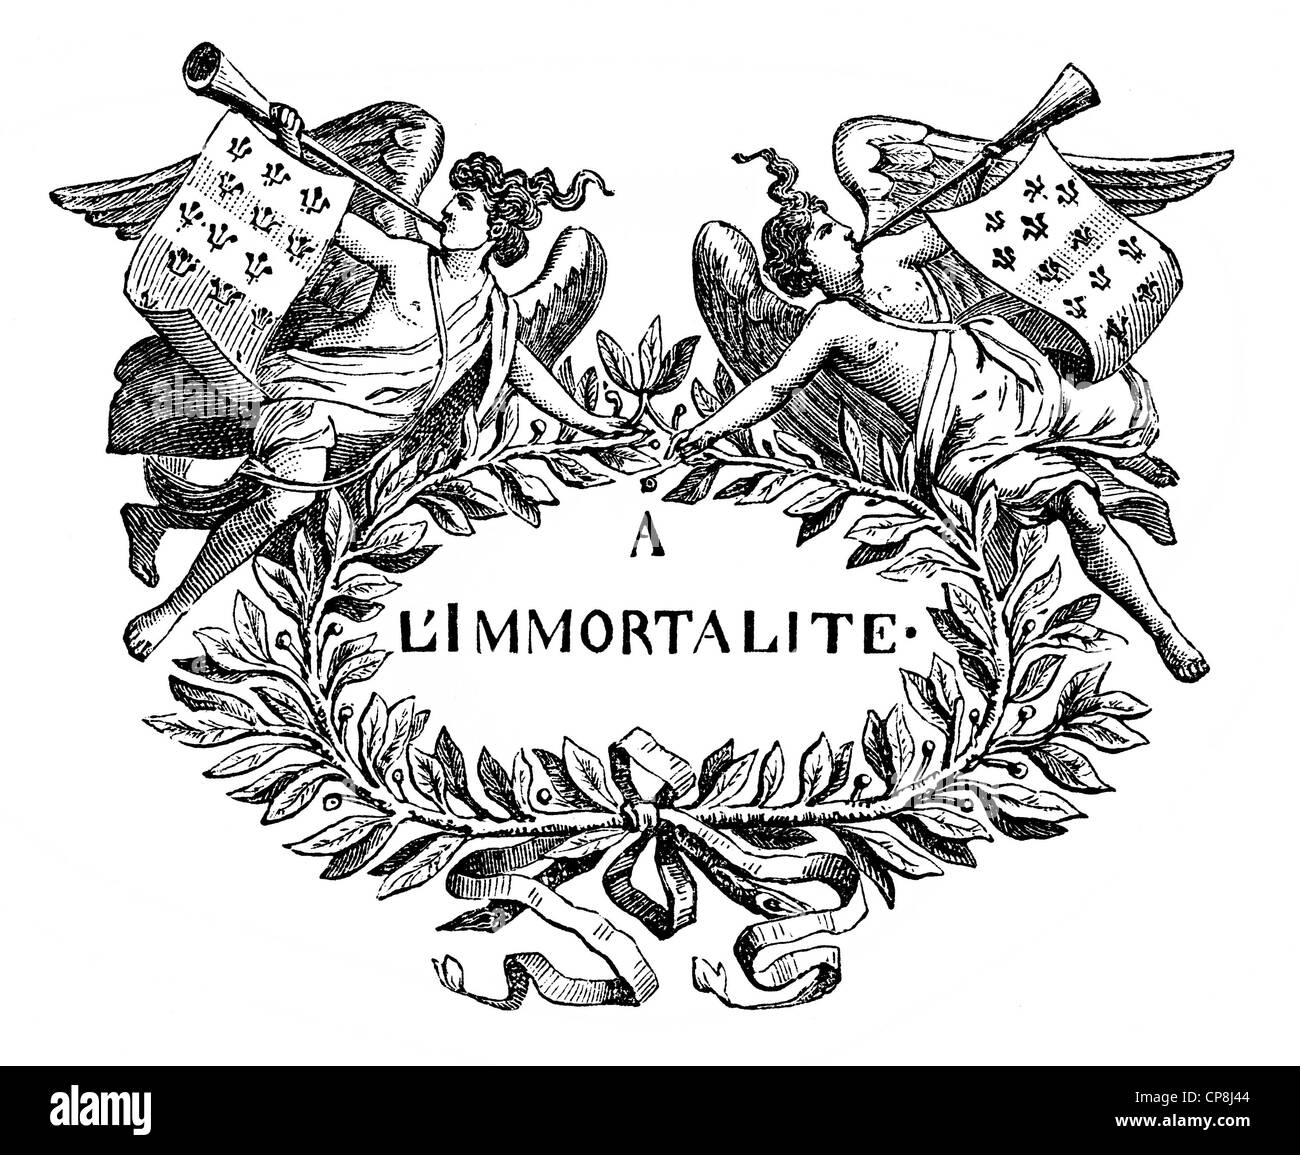 À l'Immortalité oder zur Unsterblichkeit, das Motto der französischen akademischen Gesellschaft Académie française oder französischen Akademie, À l'immortali Stockfoto